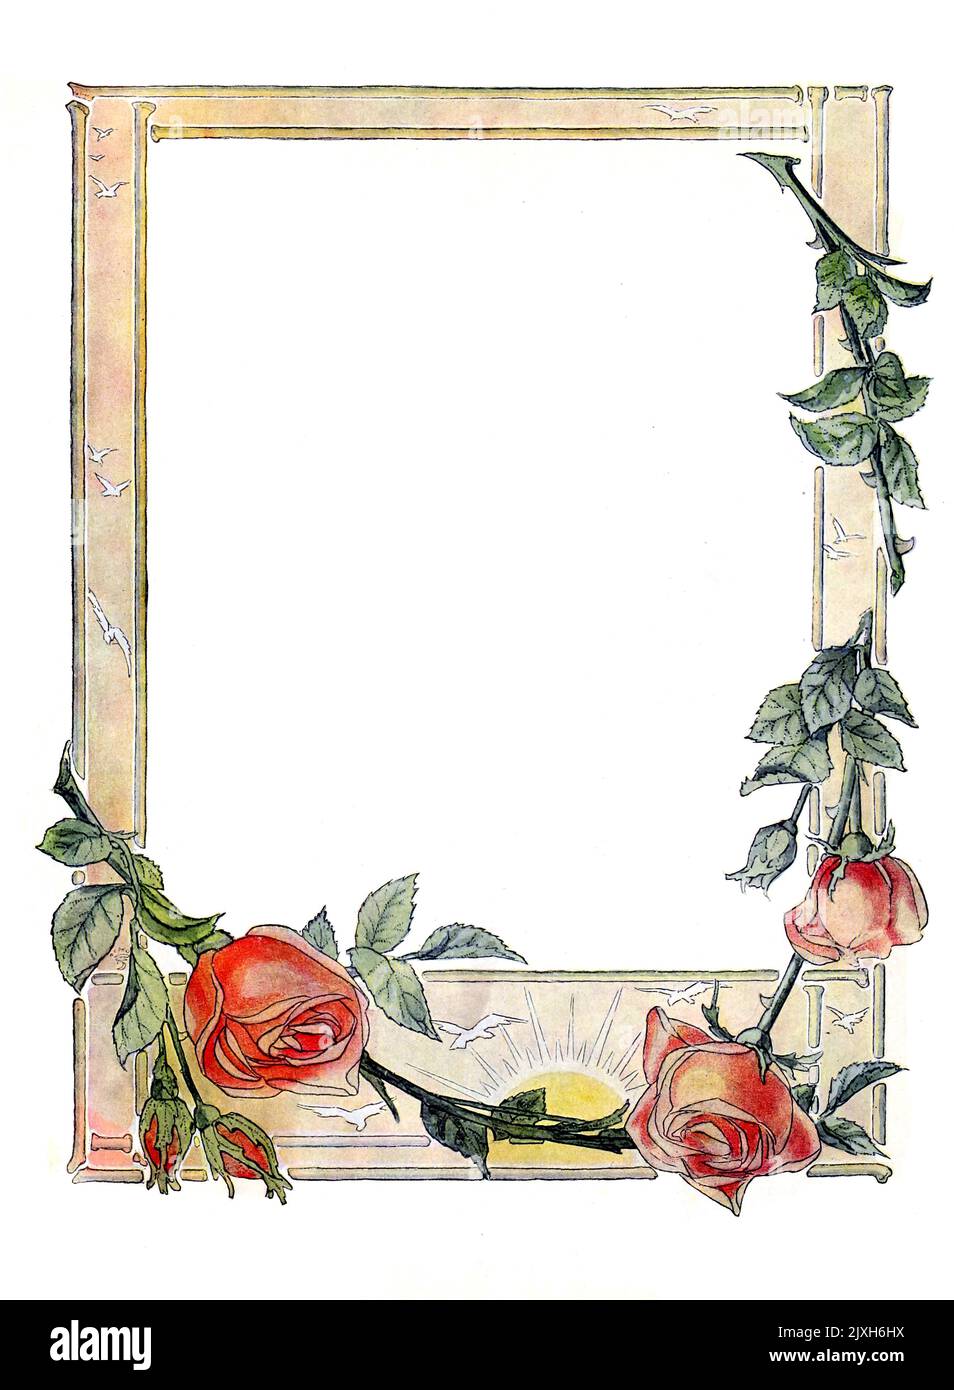 Blumenrahmen Dekorationen auf weißem Hintergrund von Earl Stetson Crawford veröffentlicht 1909 Stockfoto